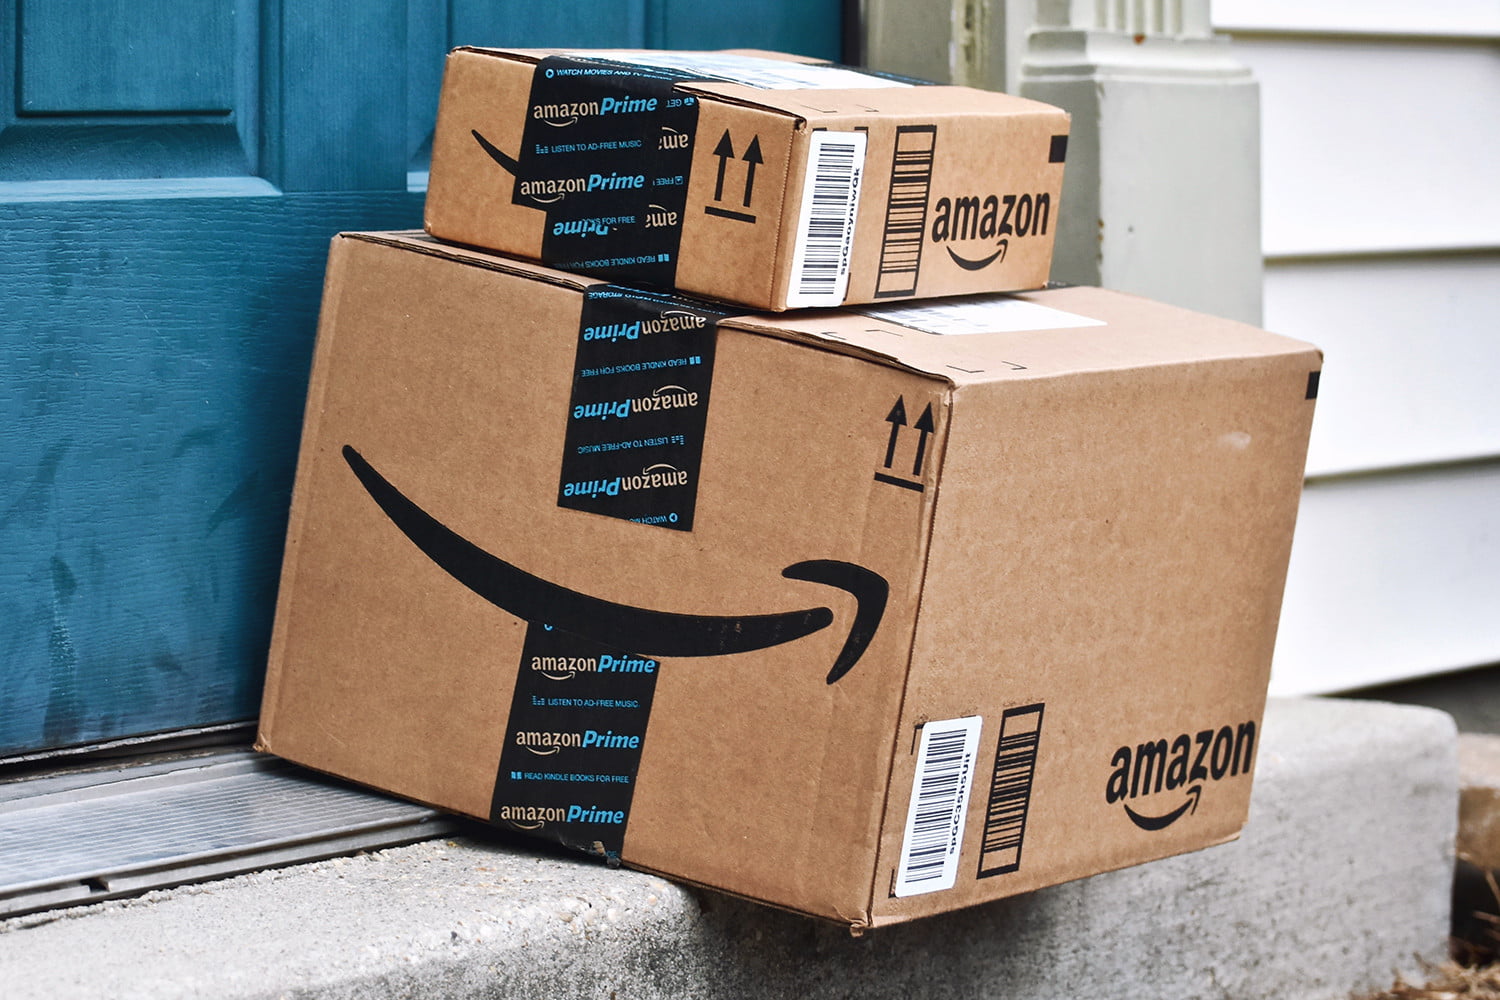  Amazon lanza oferta para ayudar a los emprendedores